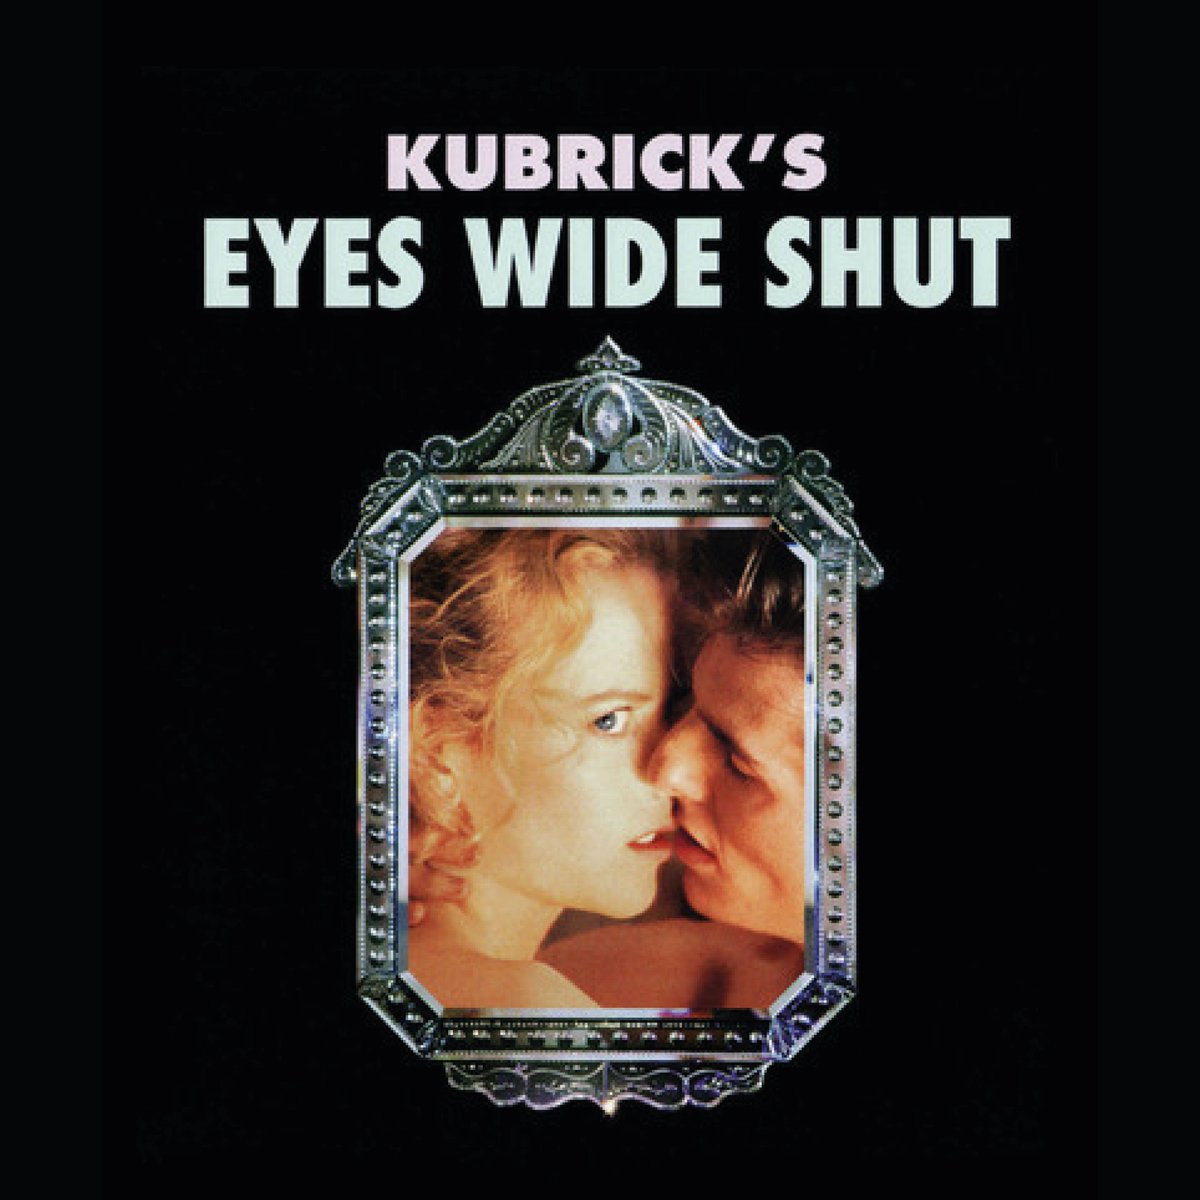 Mi película favorita de Kubrick, la elegancia y sensualidad de su fotografía,  su buen guion, y la sutil manera en la que te hace abrir los ojos de par en par. 
#kubrik #ojosbiencerrrados #lasendaopuesta #peliculafavorita #miedo #terror #horror #Illuminati